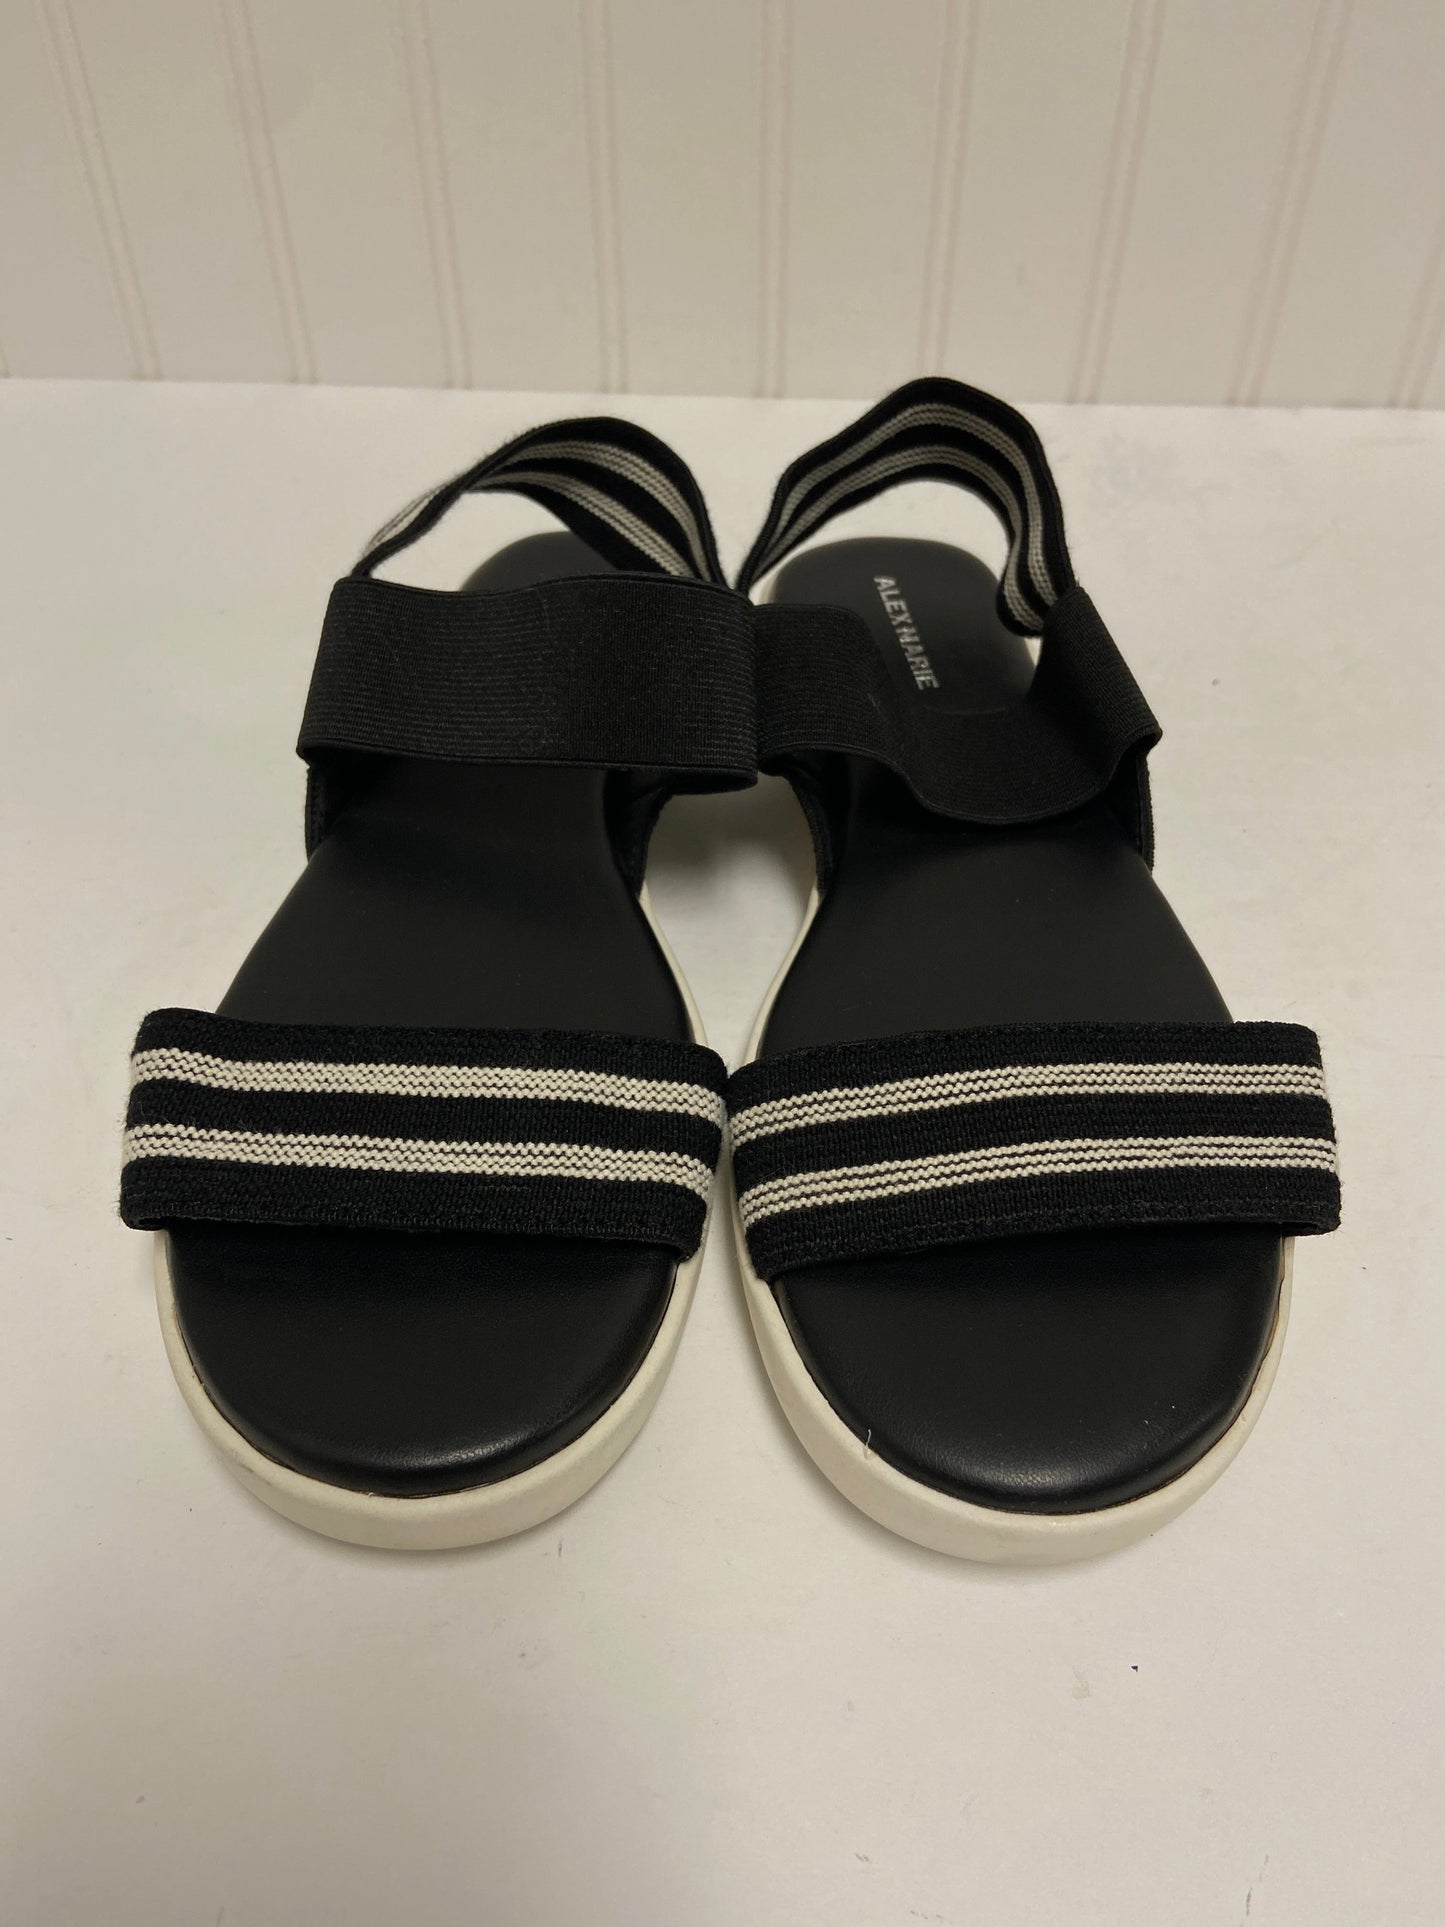 Black & White Sandals Flats Alex Marie, Size 8